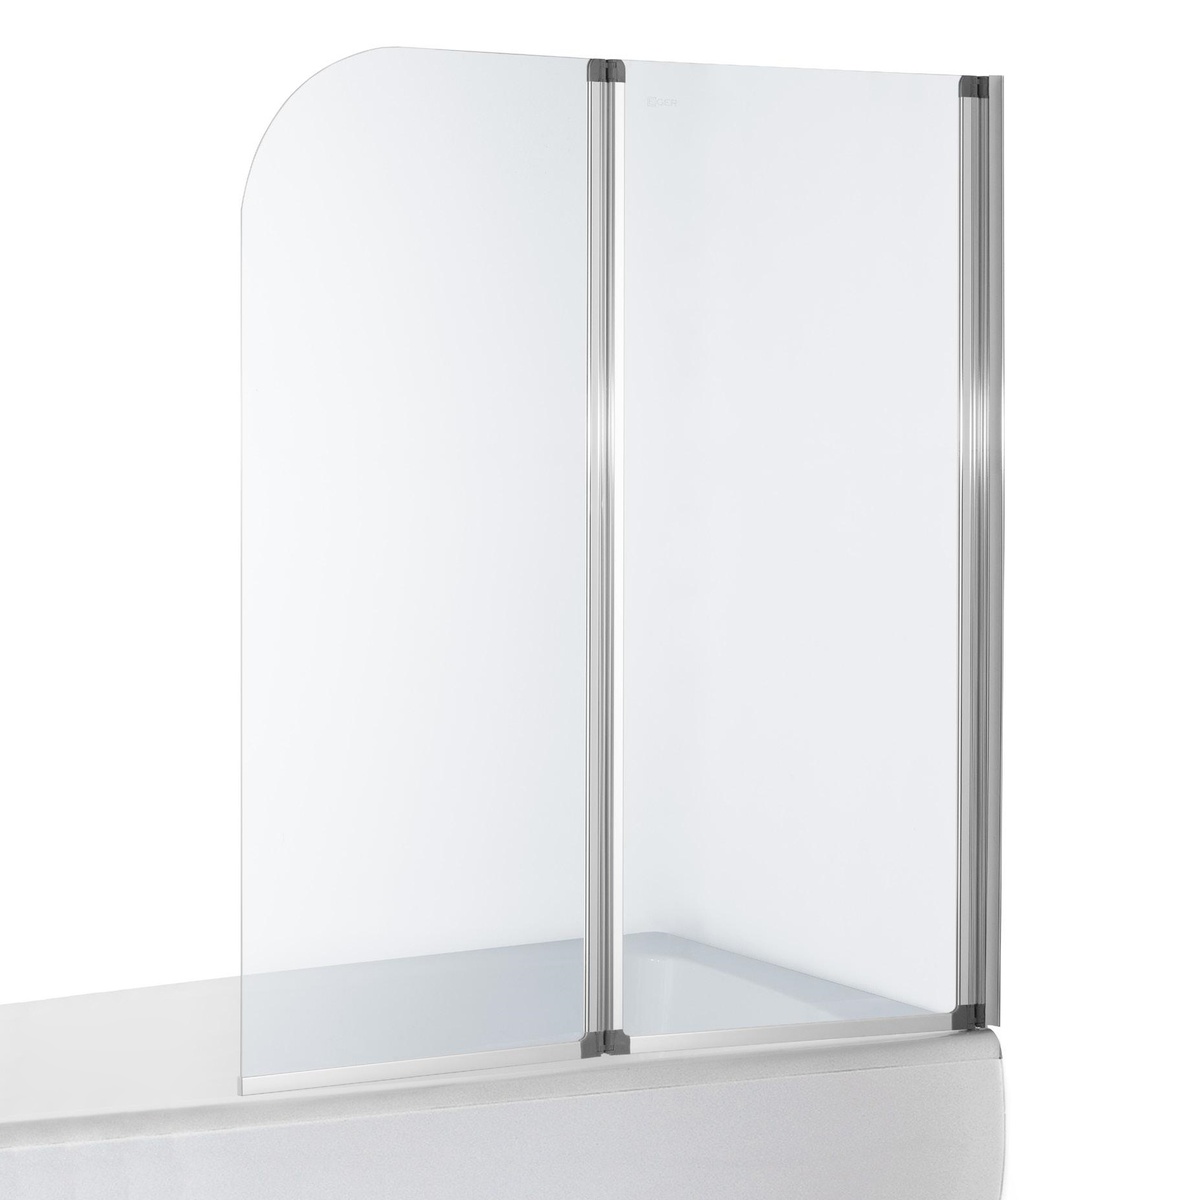 Ширма стеклянная для ванной оборачиваемая двухсекционная распашная 138см x 120см EGER стекло прозрачное 5мм профиль хром 599-121CH